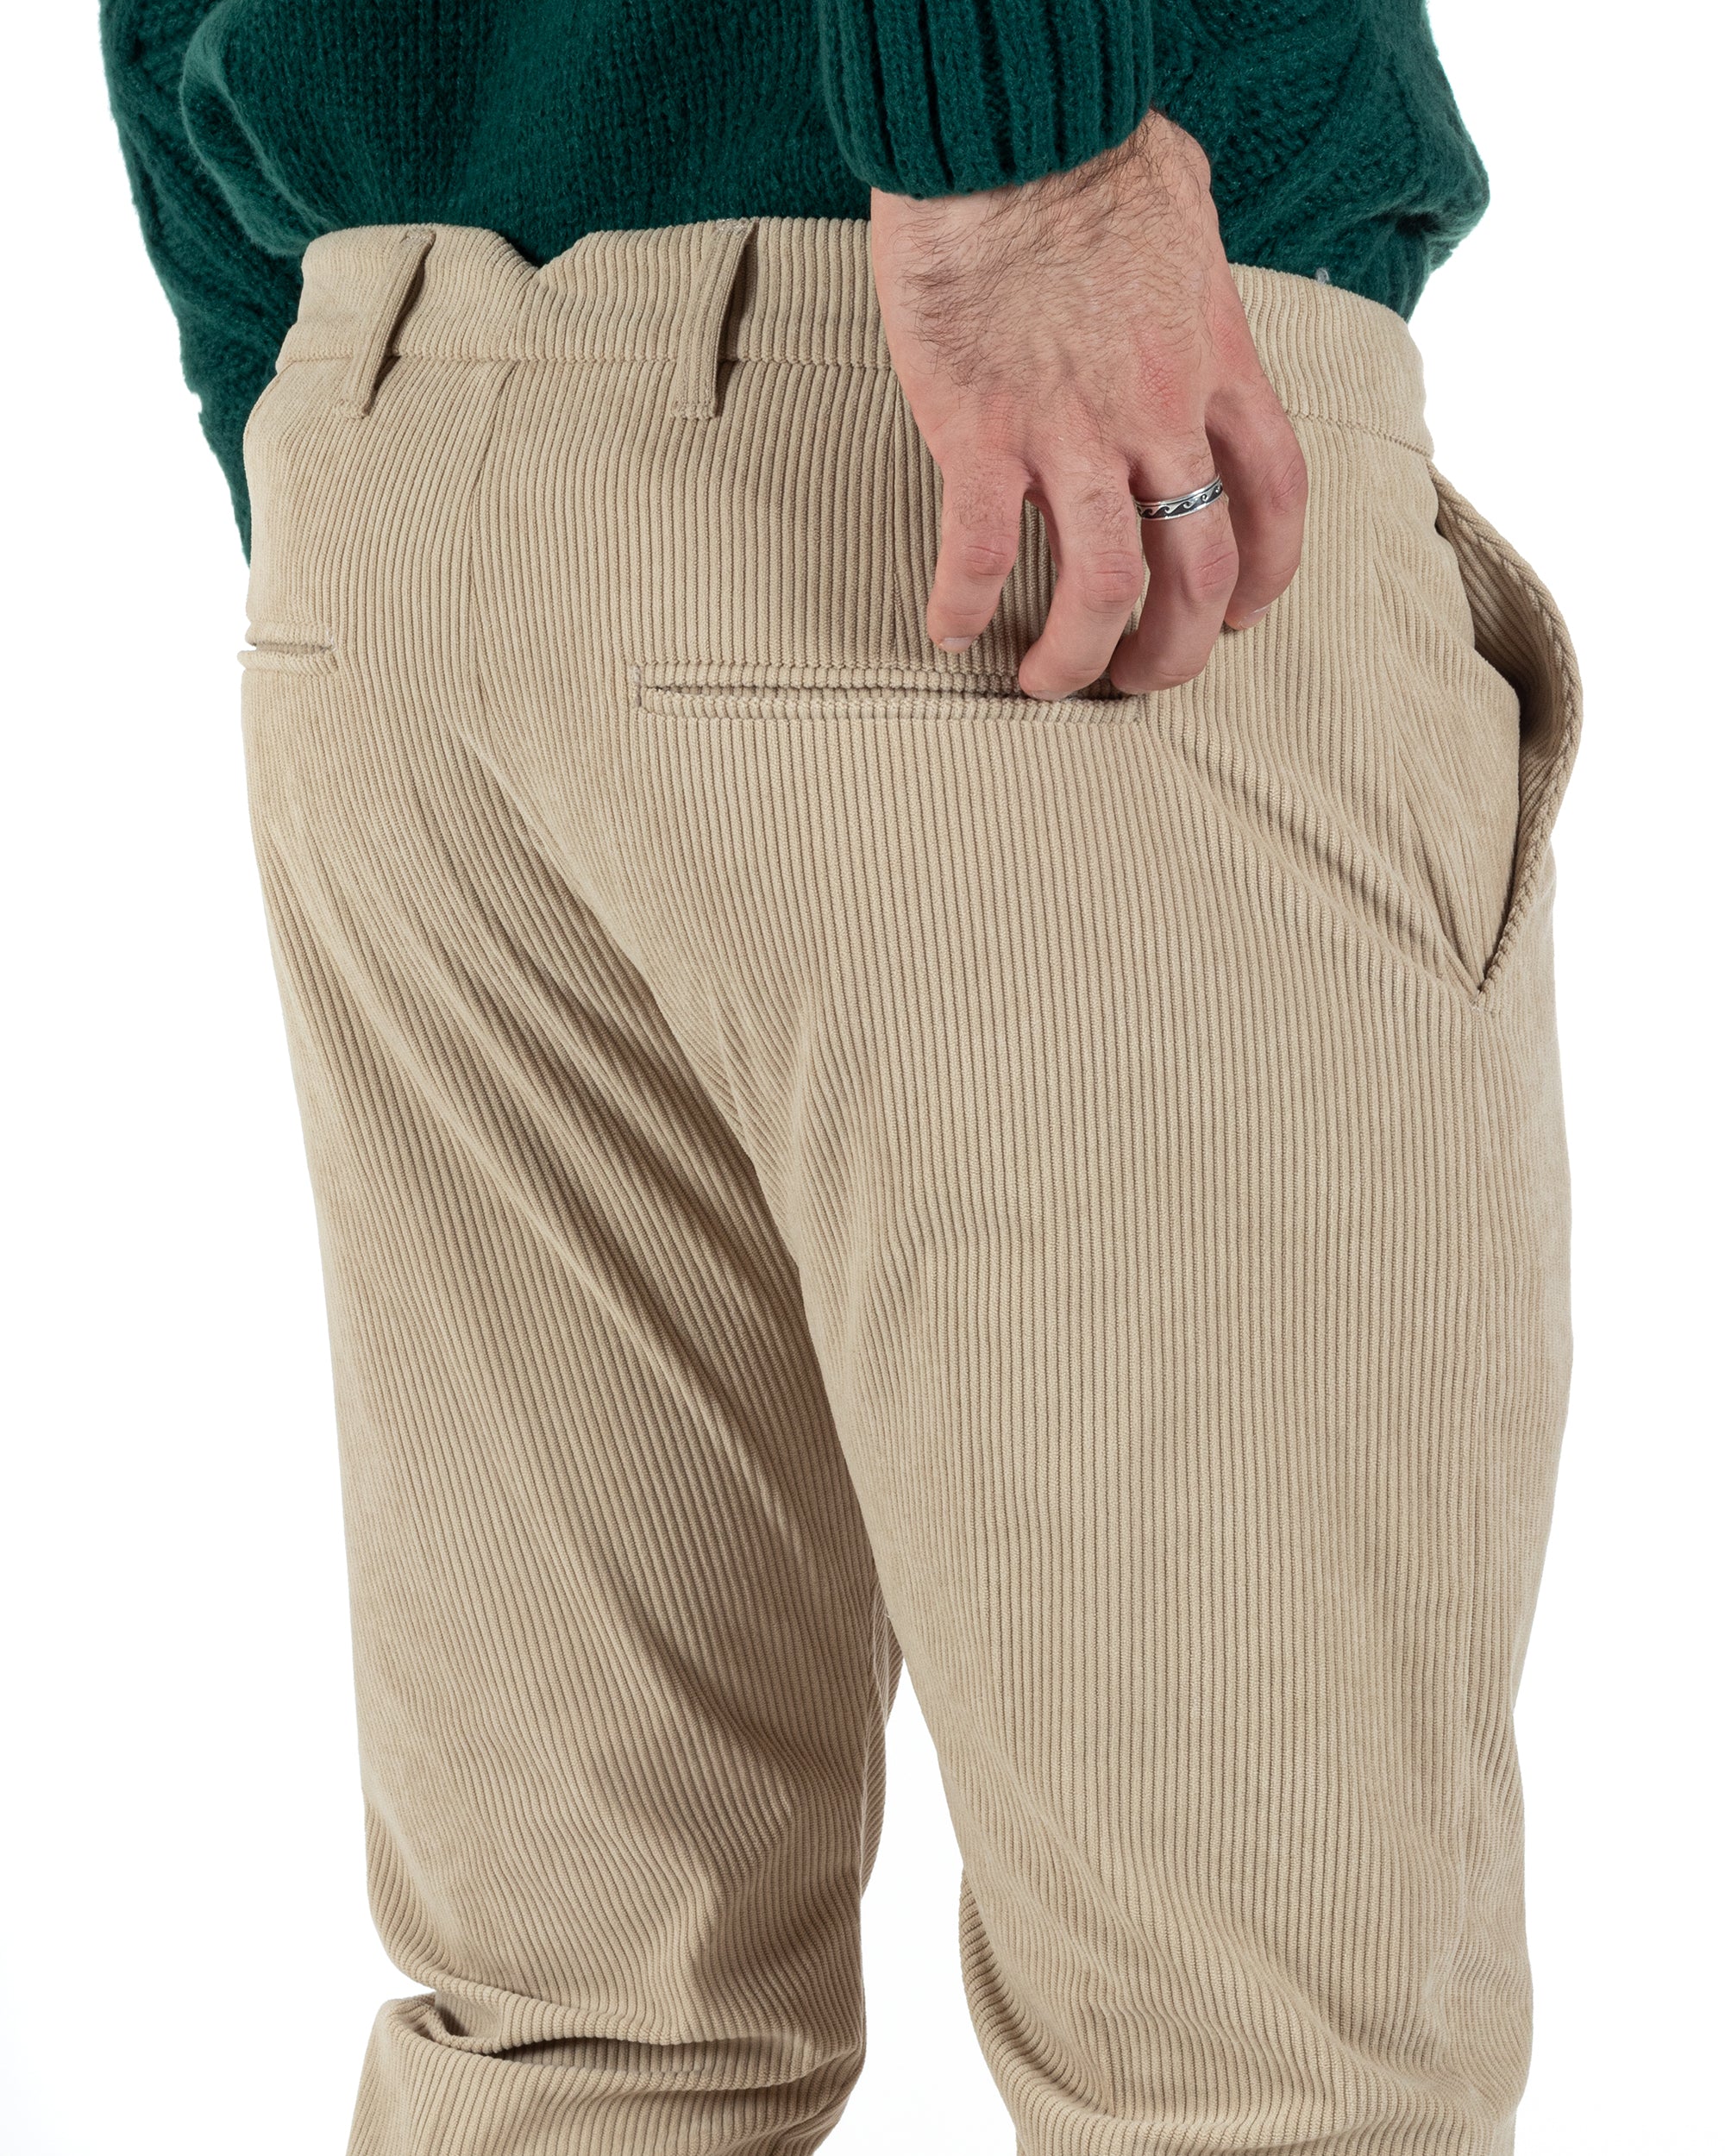 Pantaloni Uomo Tasca America Classico Velluto Costine Beige Casual GIOSAL-P6003A